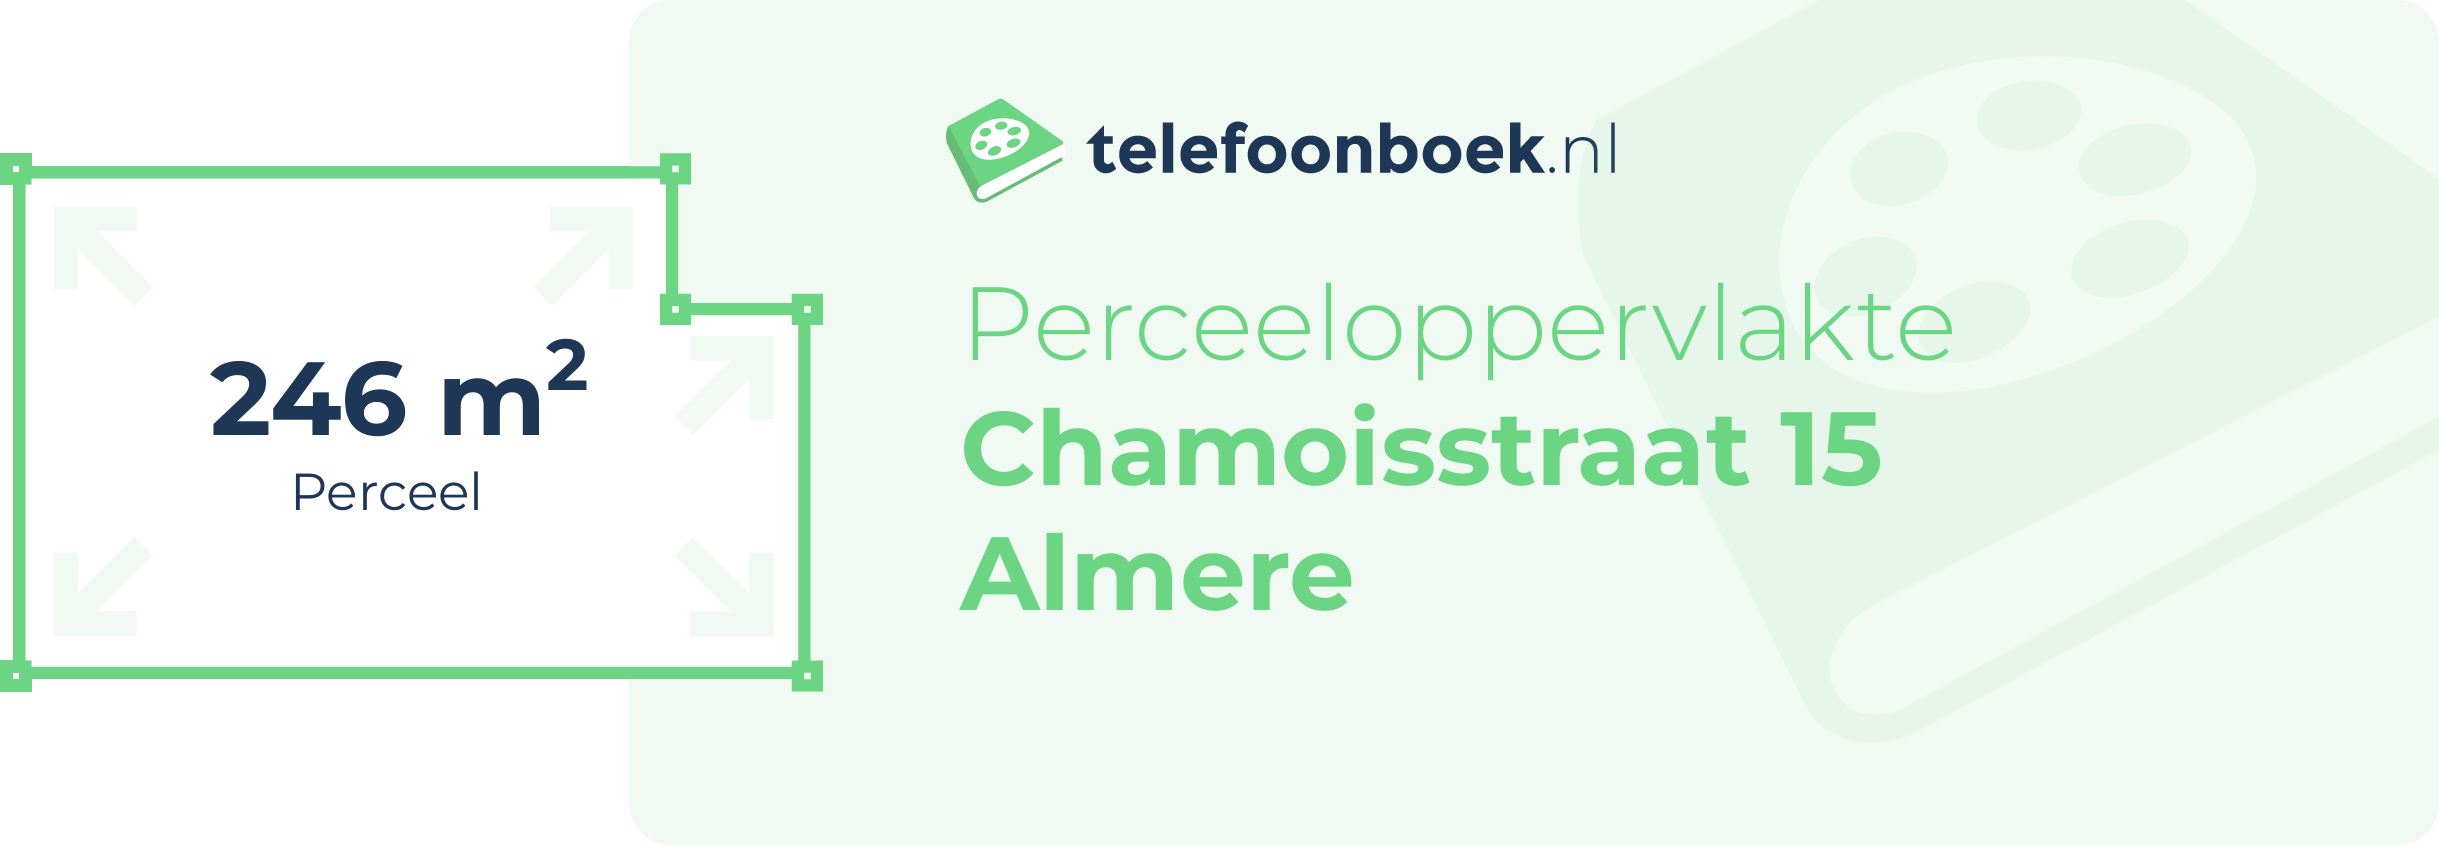 Perceeloppervlakte Chamoisstraat 15 Almere